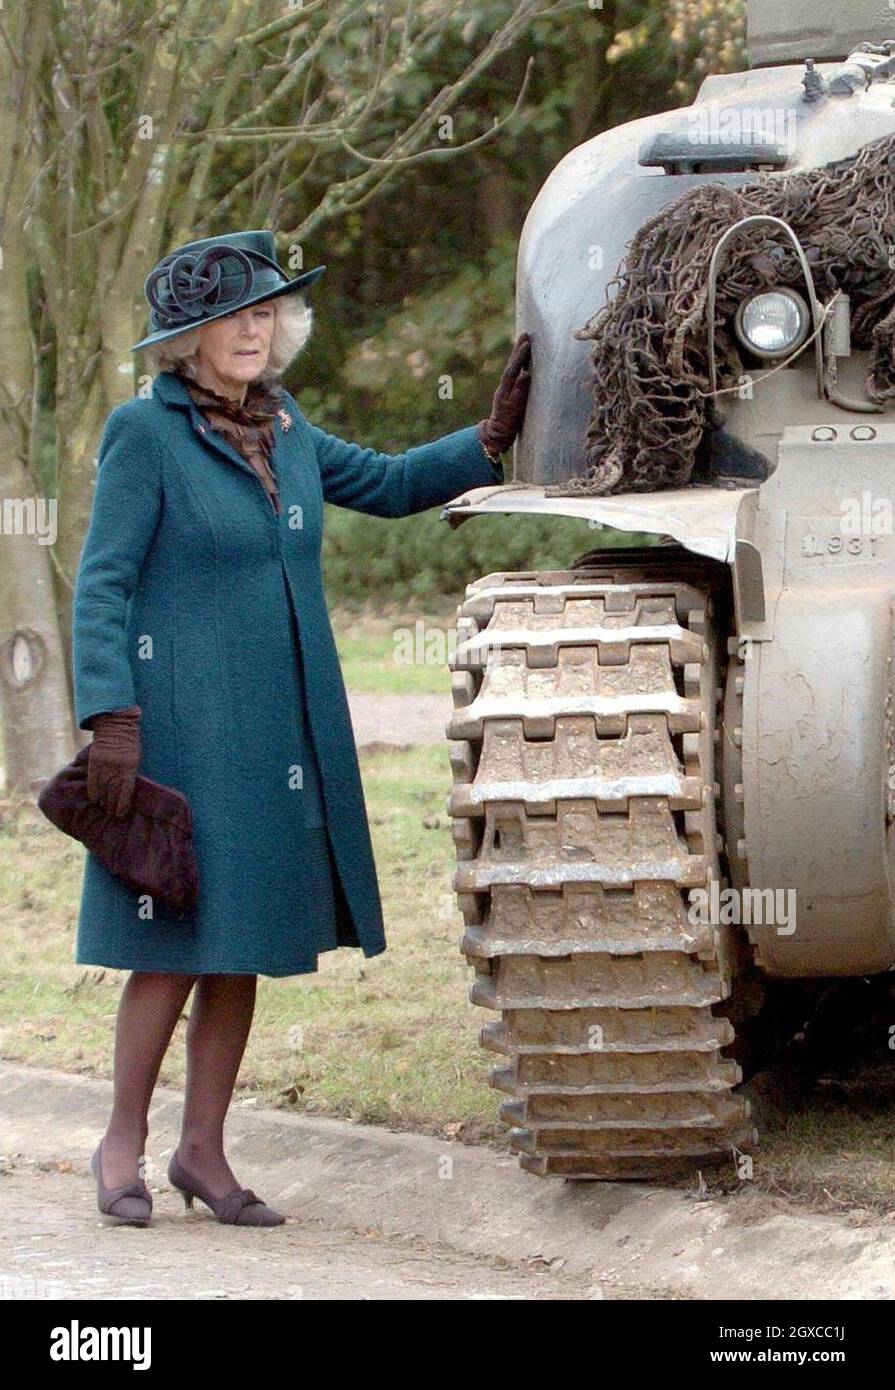 Camilla, Herzogin von Cornwall, Schirmherrin der 7. Panzerdivision Memorial Association, inspiziert nach einem Gedenkgottesdienst im Thetford Forest einen alten Panzer, um an den 65. Jahrestag des Starts der Schlacht von El Alamein in Ägypten zu erinnern. Der Vater der Herzogin, Major Bruce Shand, kämpfte in der Schlacht von El Alamein. Stockfoto